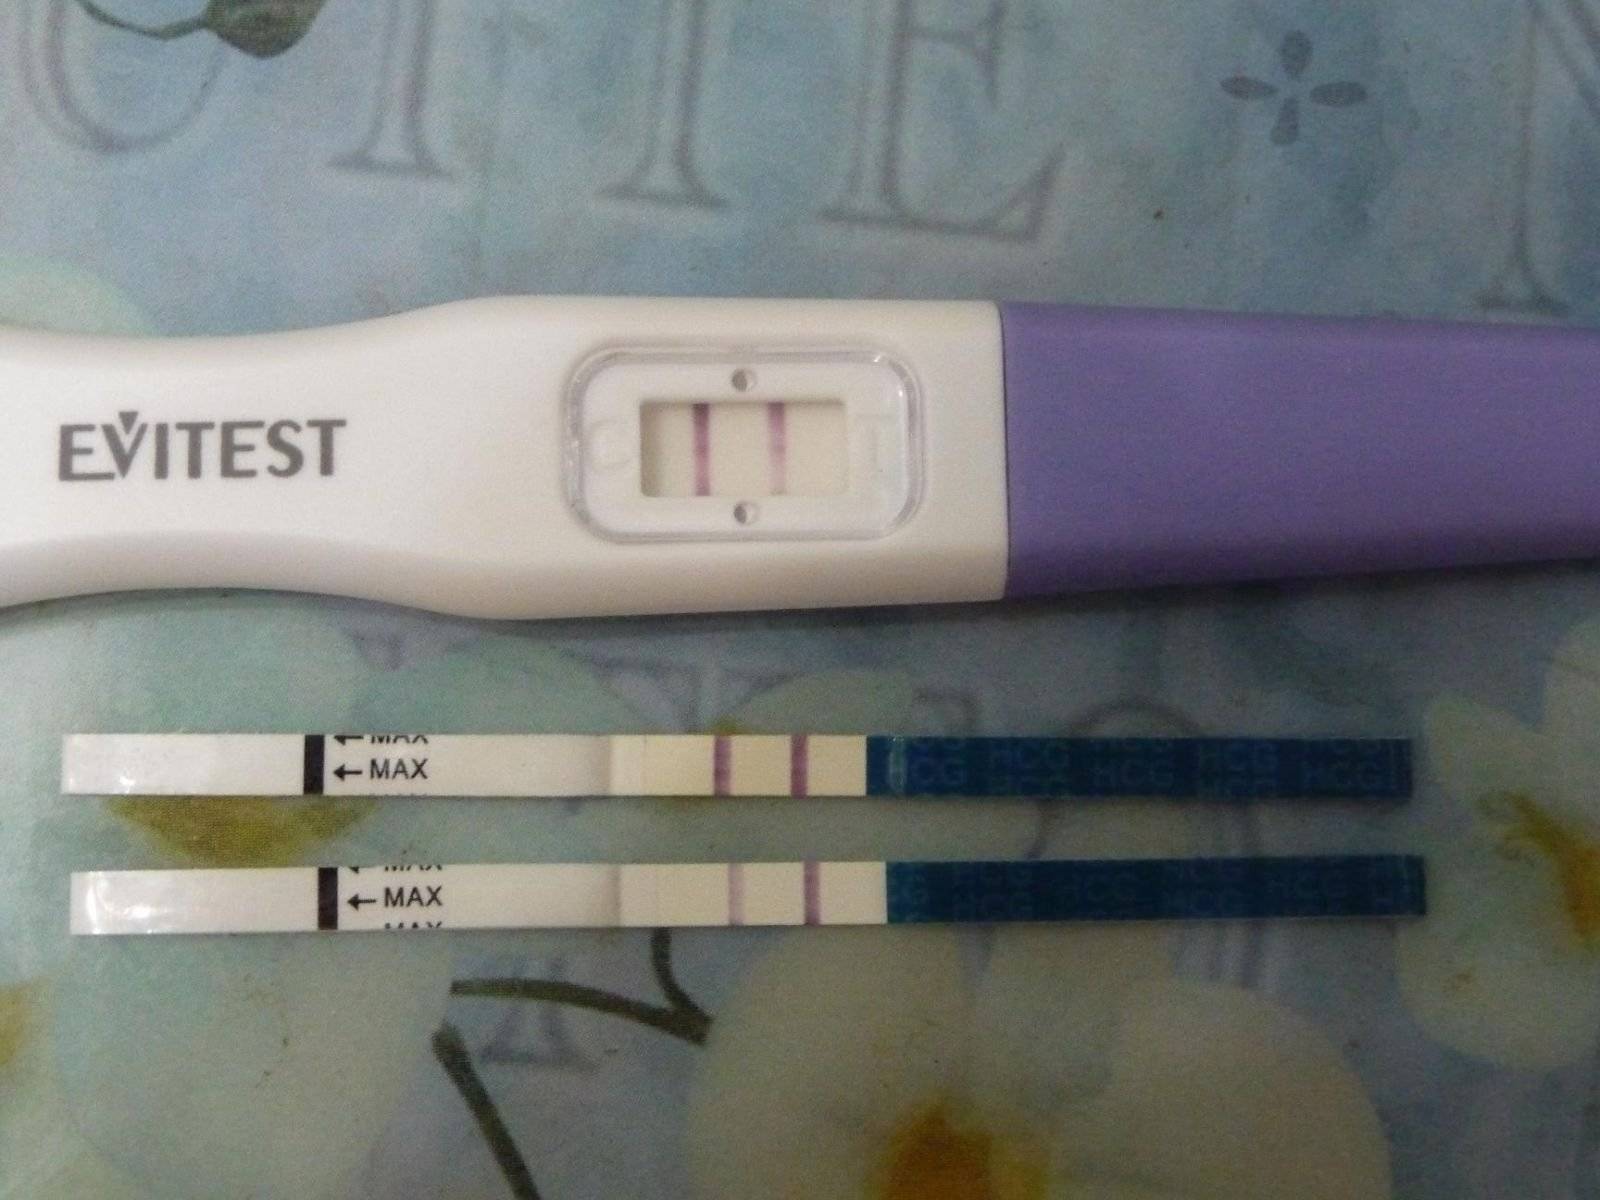 Отрицательный тест на беременность: когда результат можно считать достоверным?